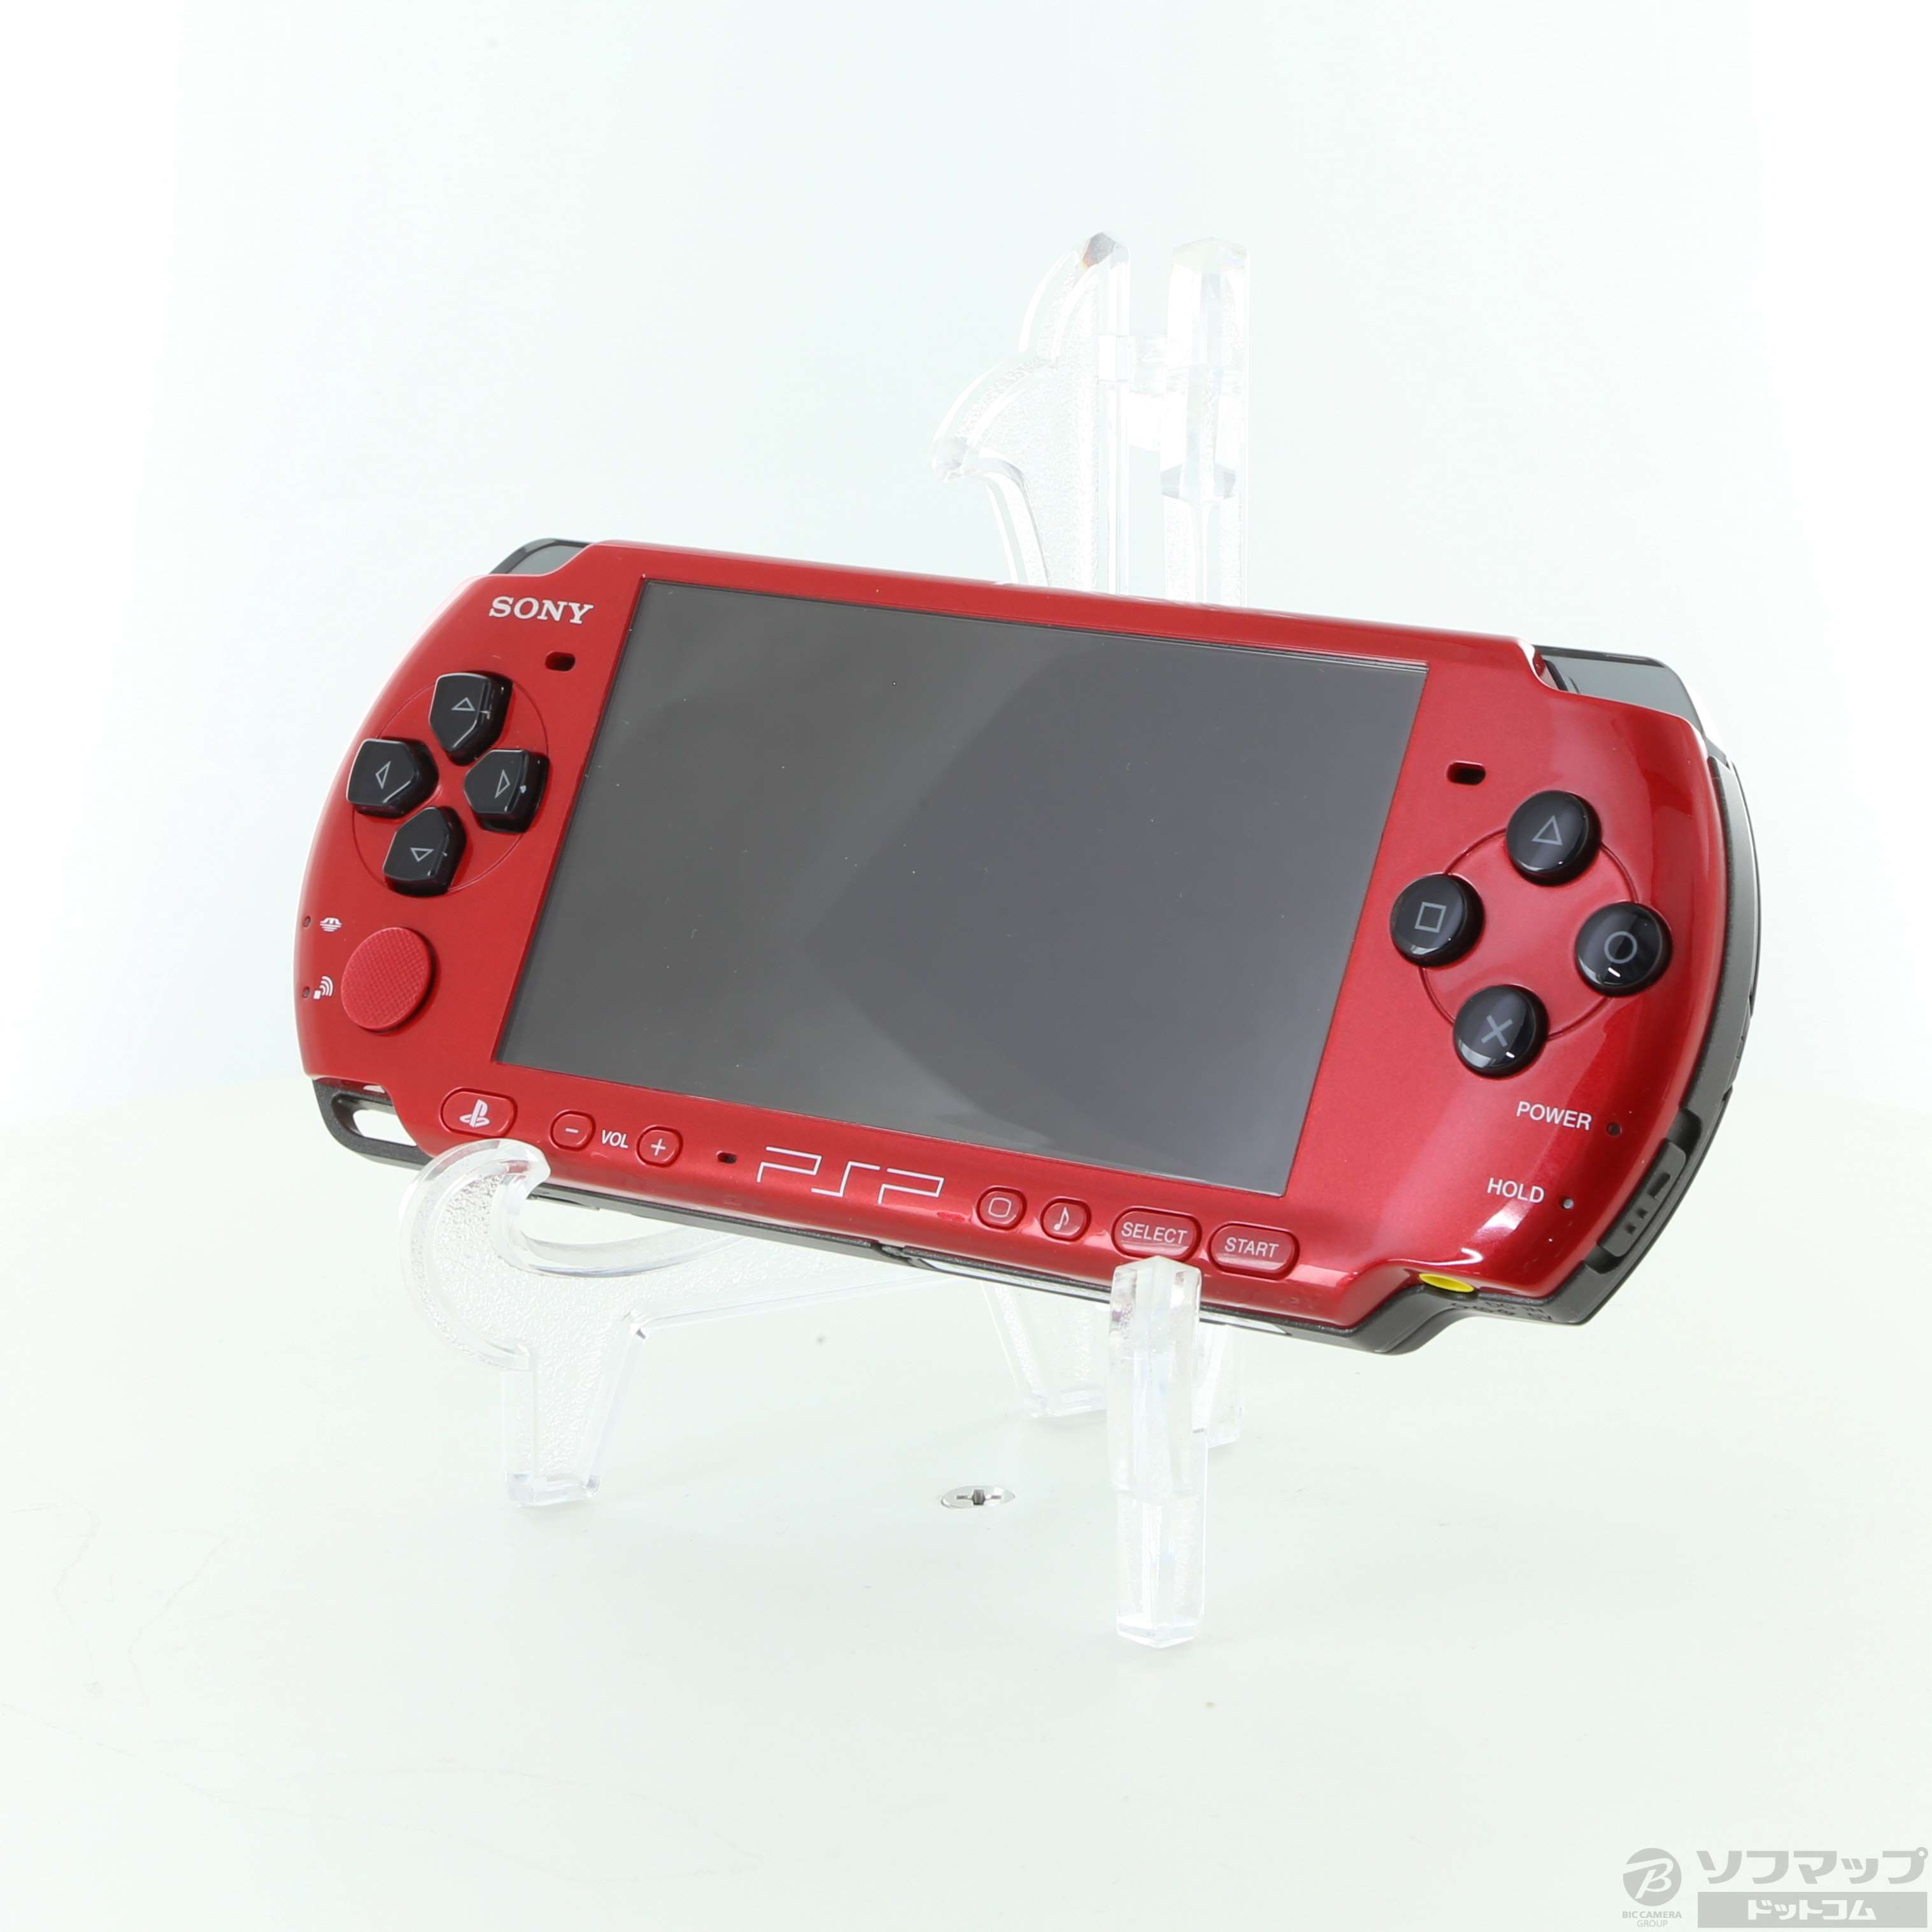 【中古】PSP-3000 バリュー レッド ブラック PSPJ-30026 